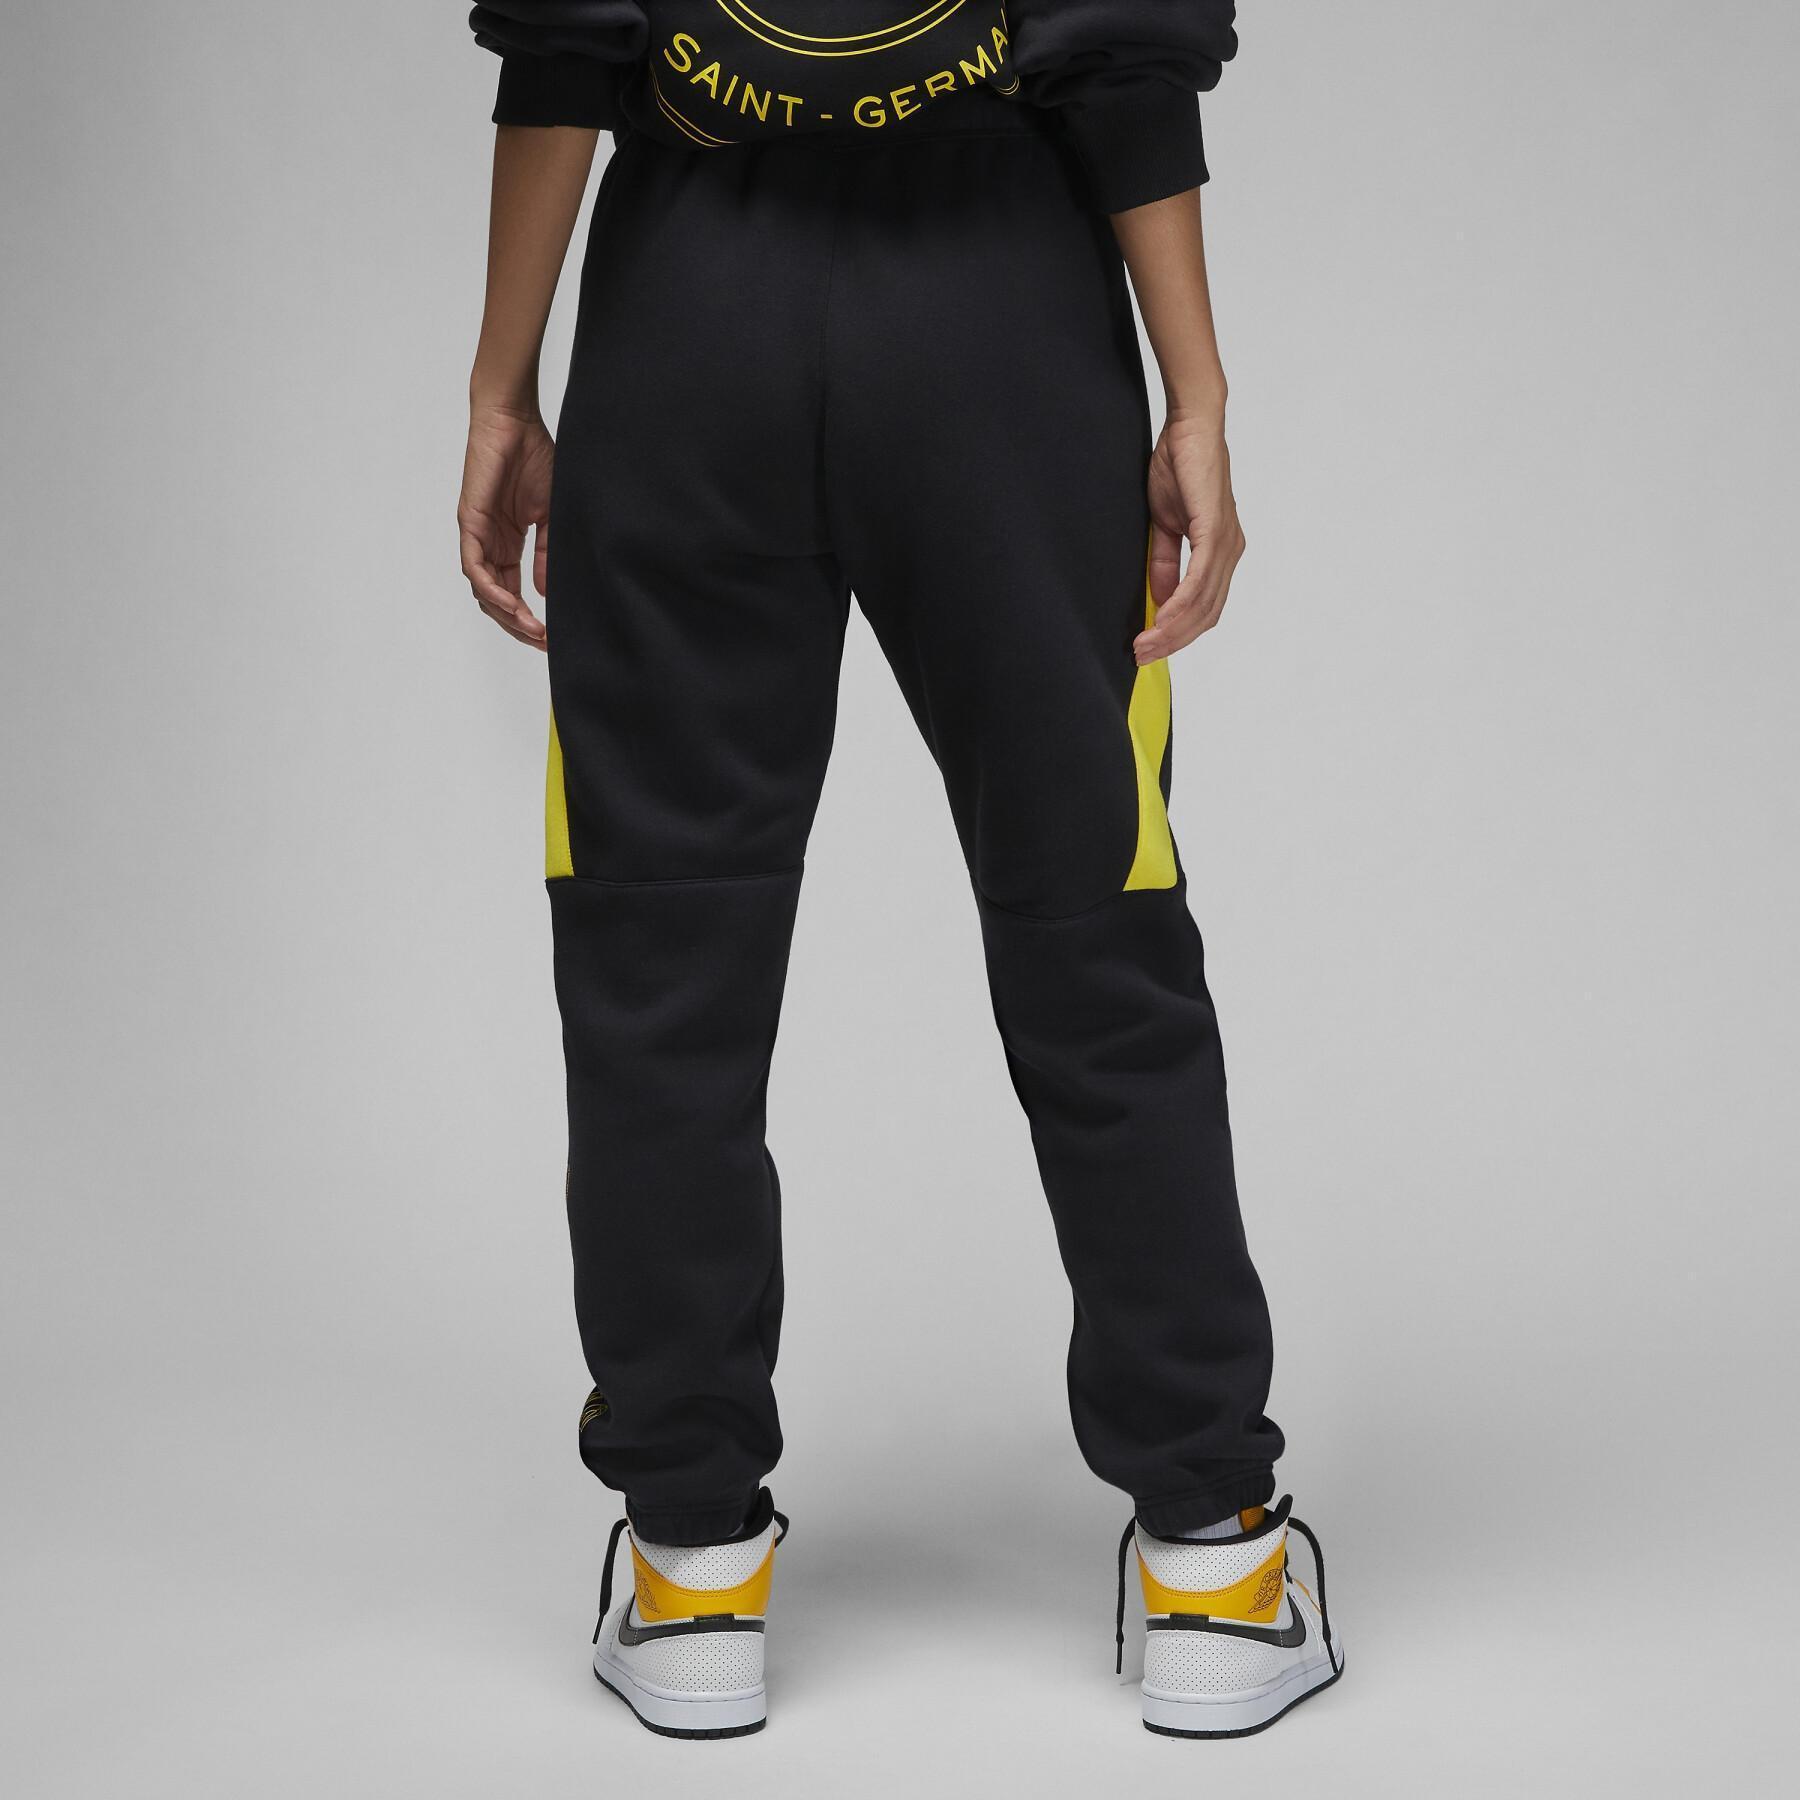 Pantalón de chándal mujer Nike Jordan PSG